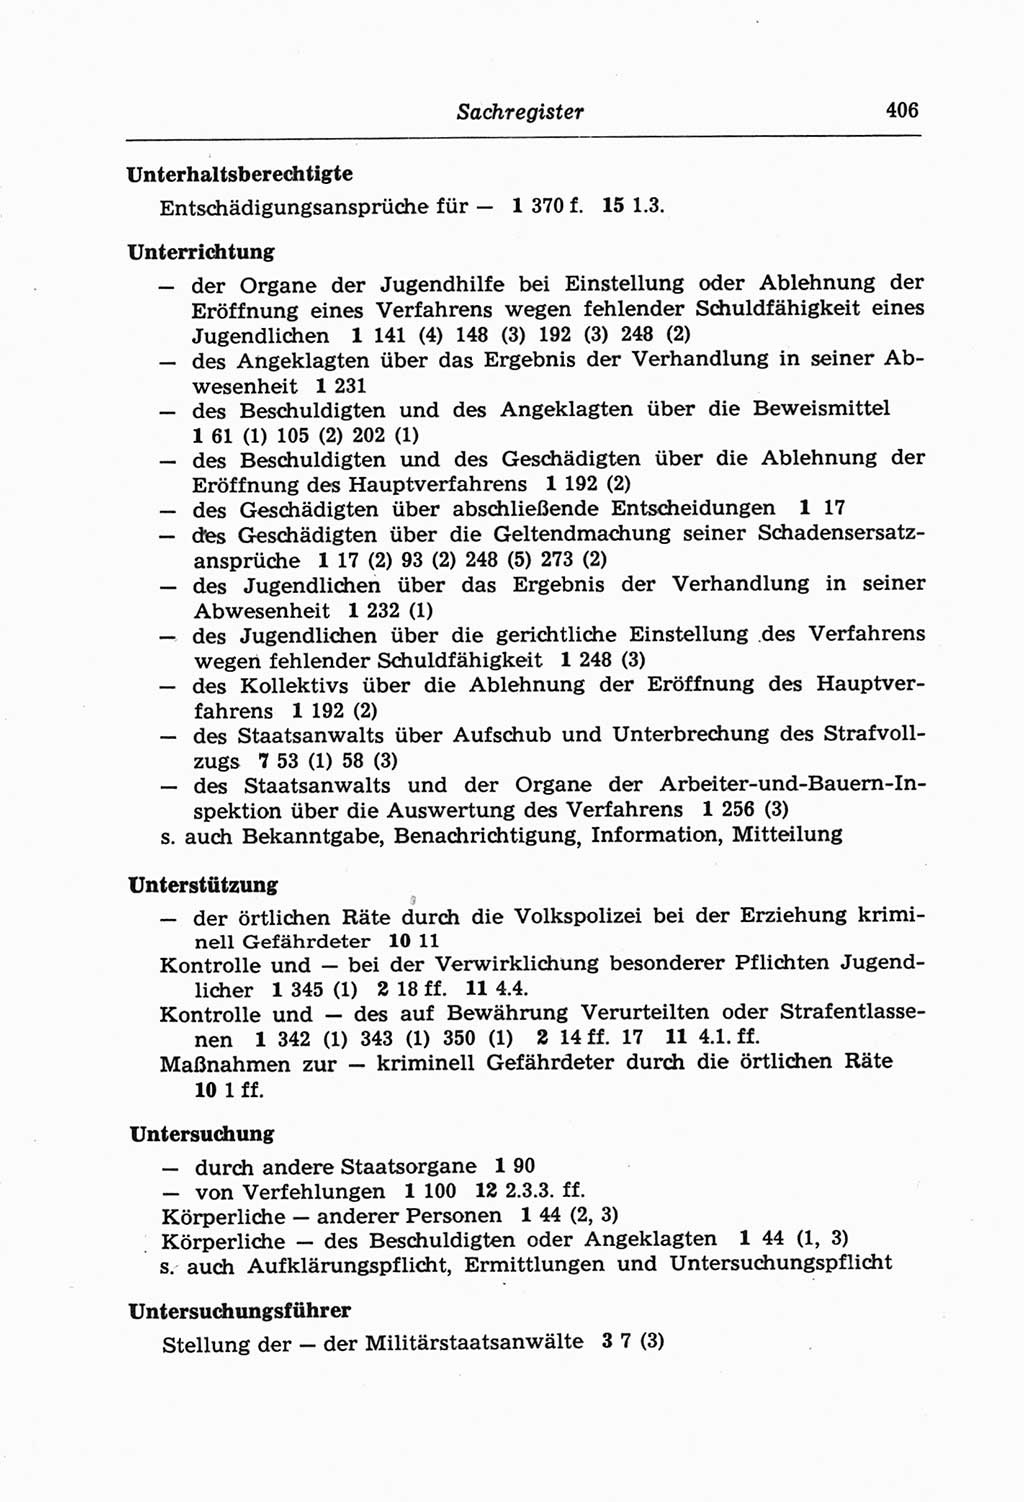 Strafprozeßordnung (StPO) der Deutschen Demokratischen Republik (DDR) und angrenzende Gesetze und Bestimmungen 1968, Seite 406 (StPO Ges. Bstgn. DDR 1968, S. 406)